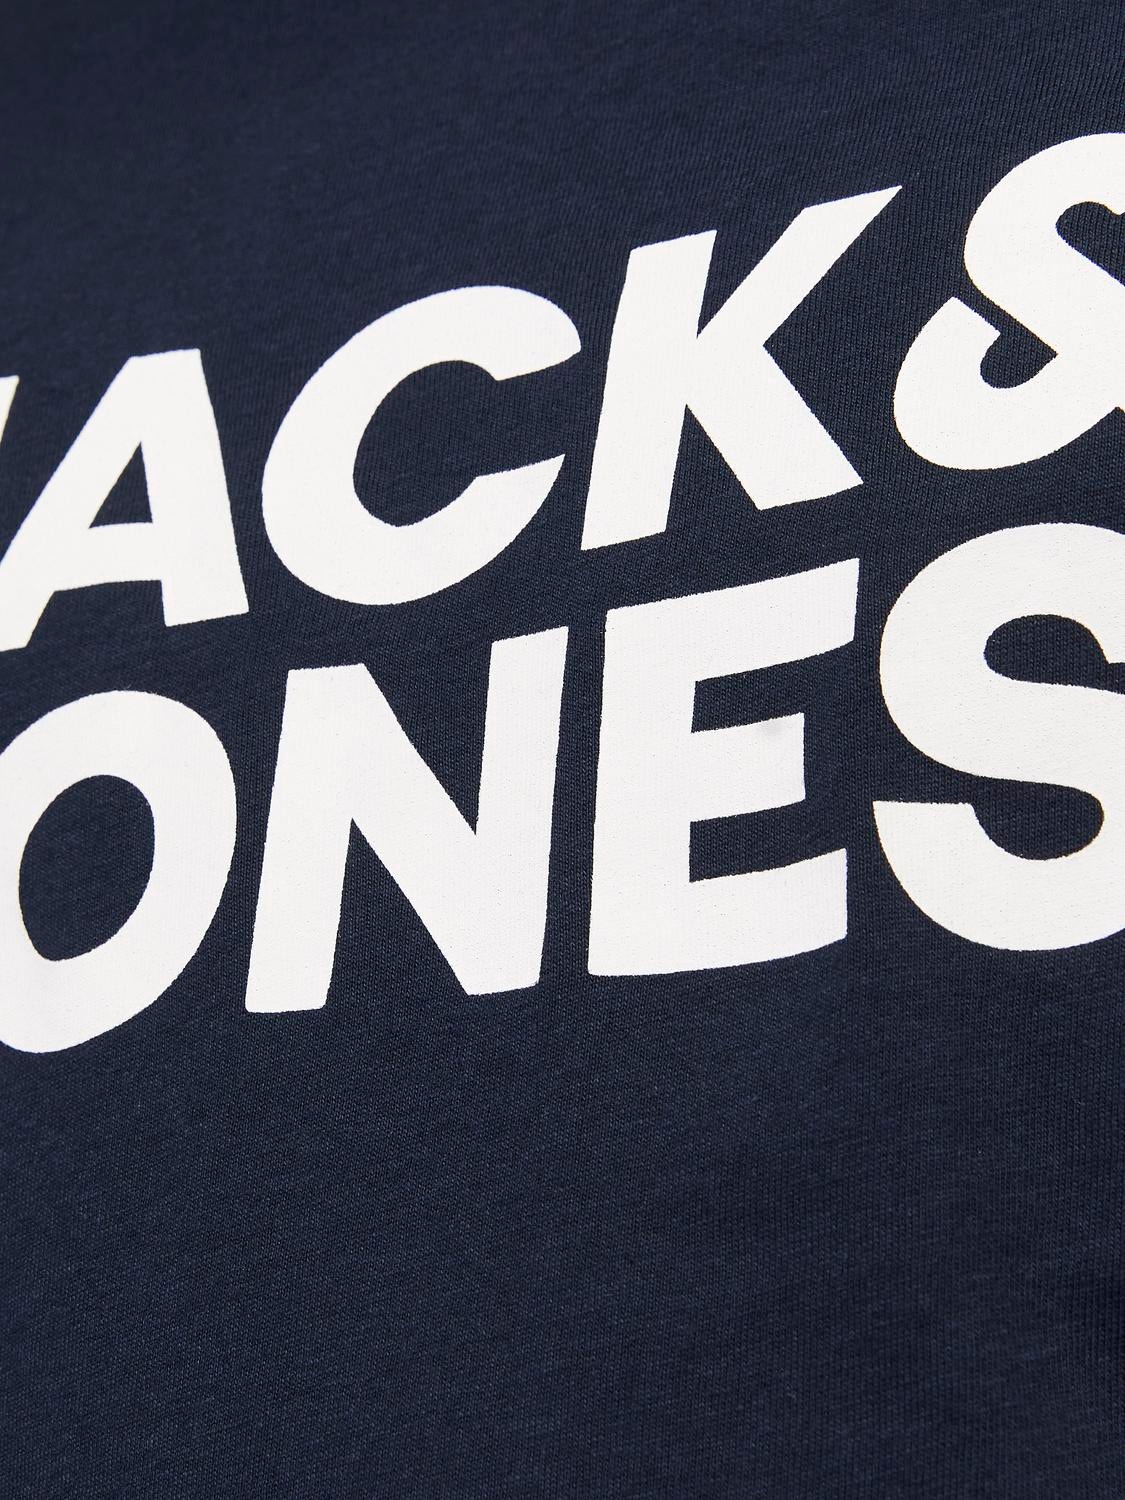 Jack & Jones Logotyp T-shirt För pojkar -Navy Blazer - 12152730